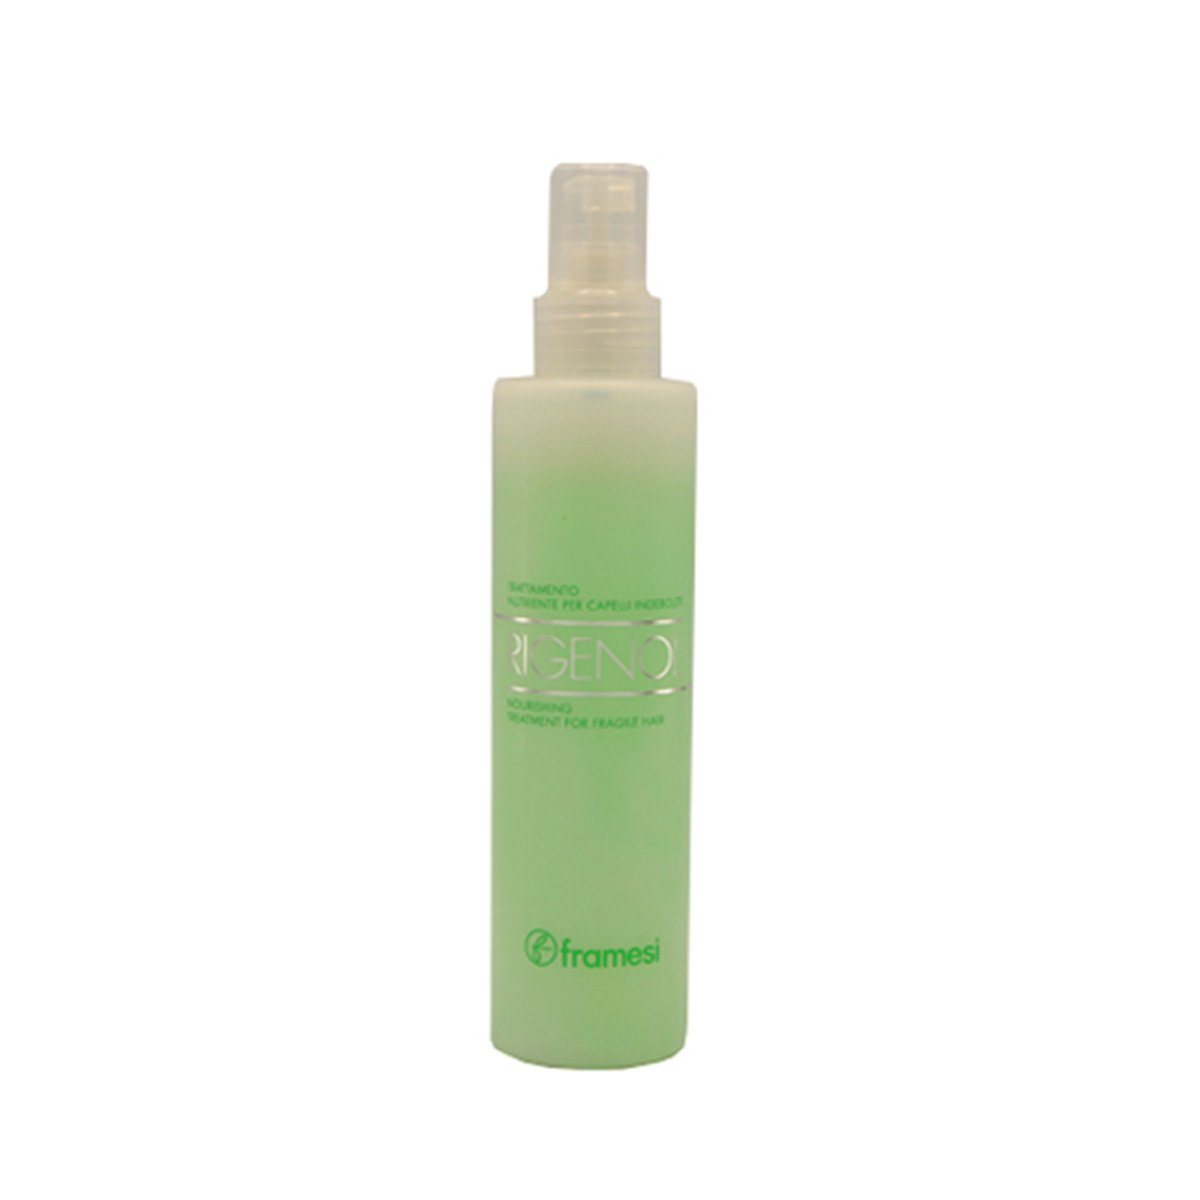 Framesi - Rigenol Flacone Hair Spray 200 ml